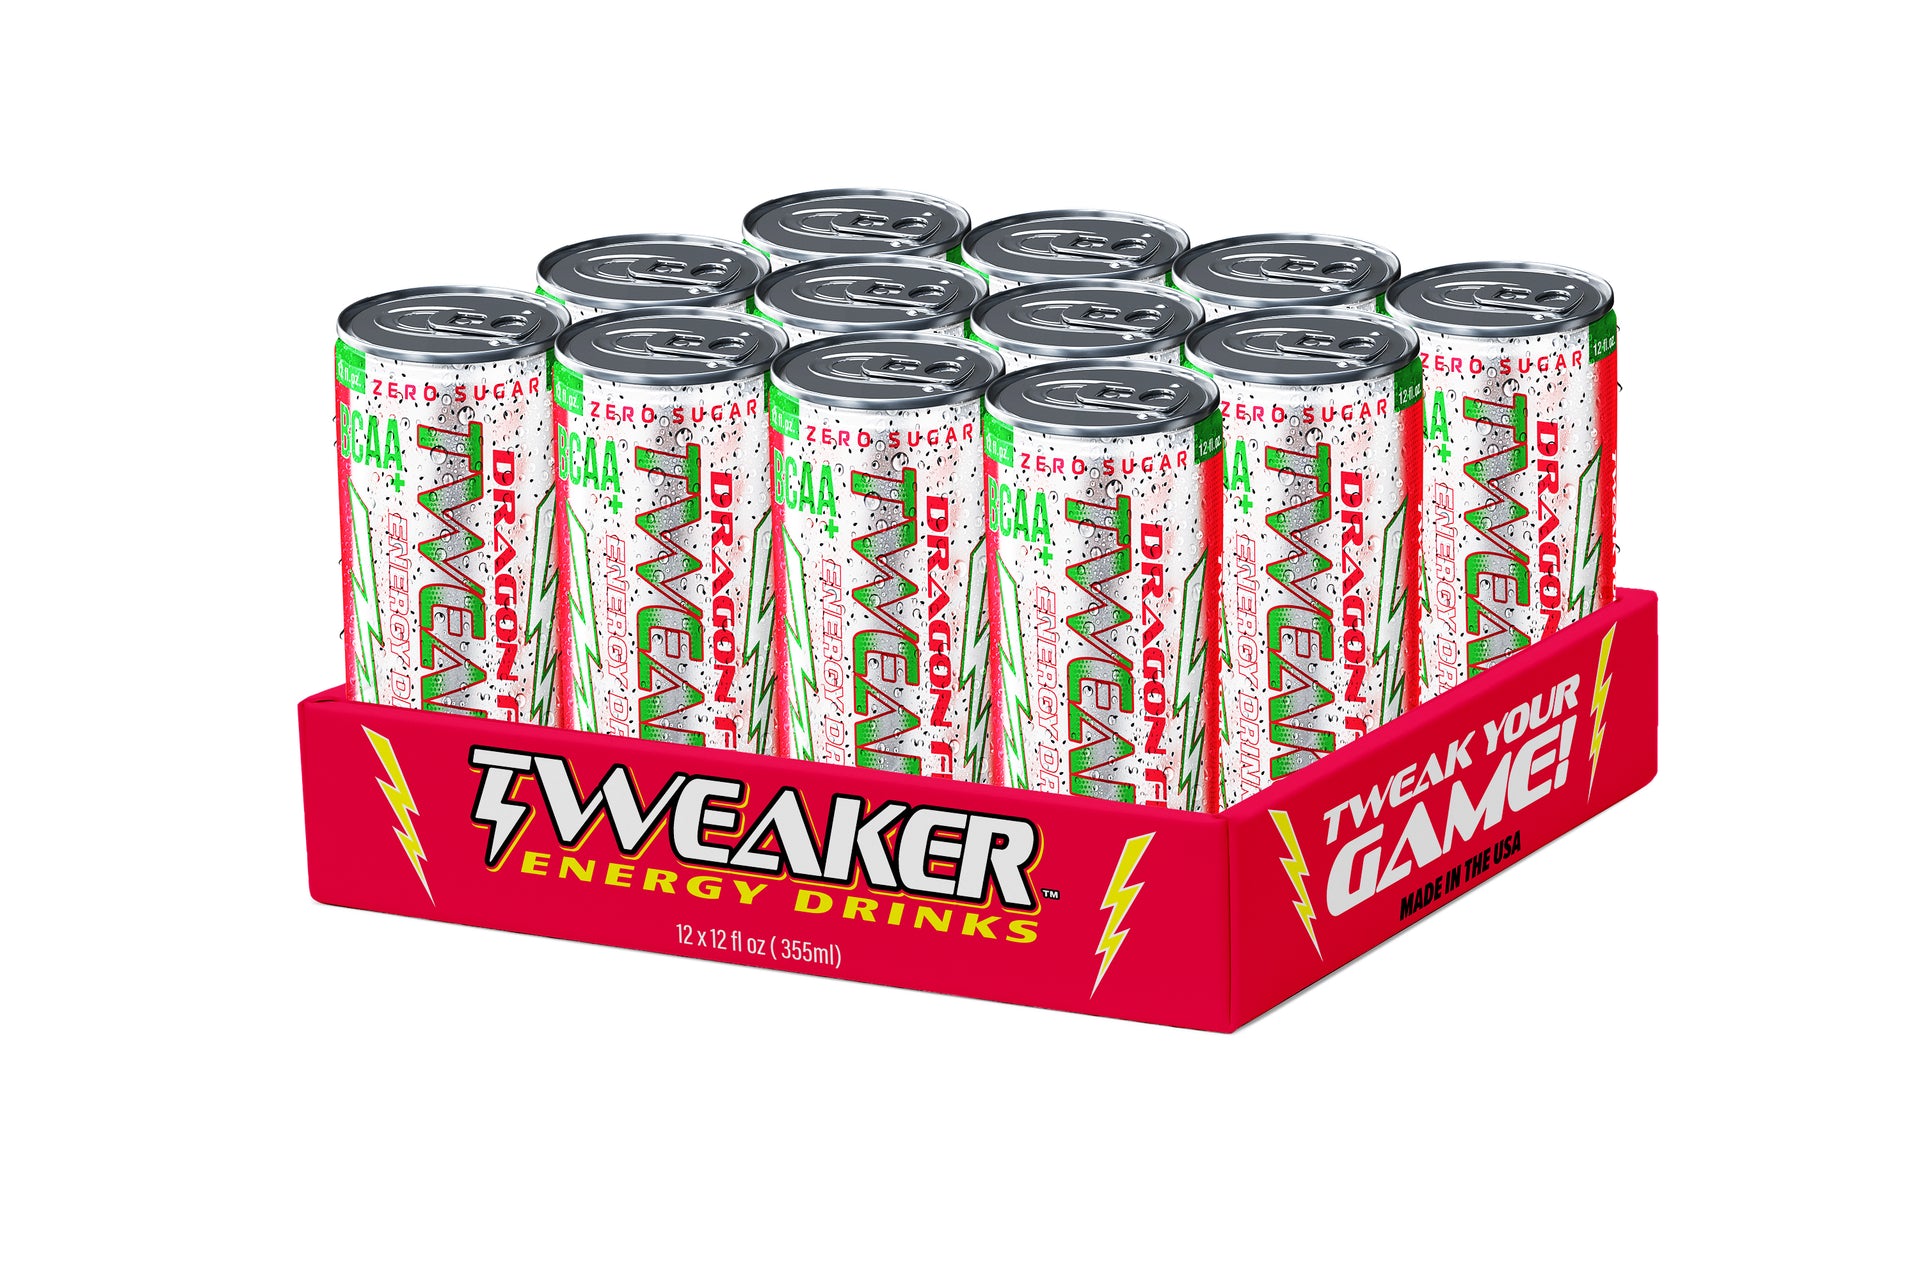 Image shows 12 pack case of Tweaker Energy Drink, DragonFruit flavor